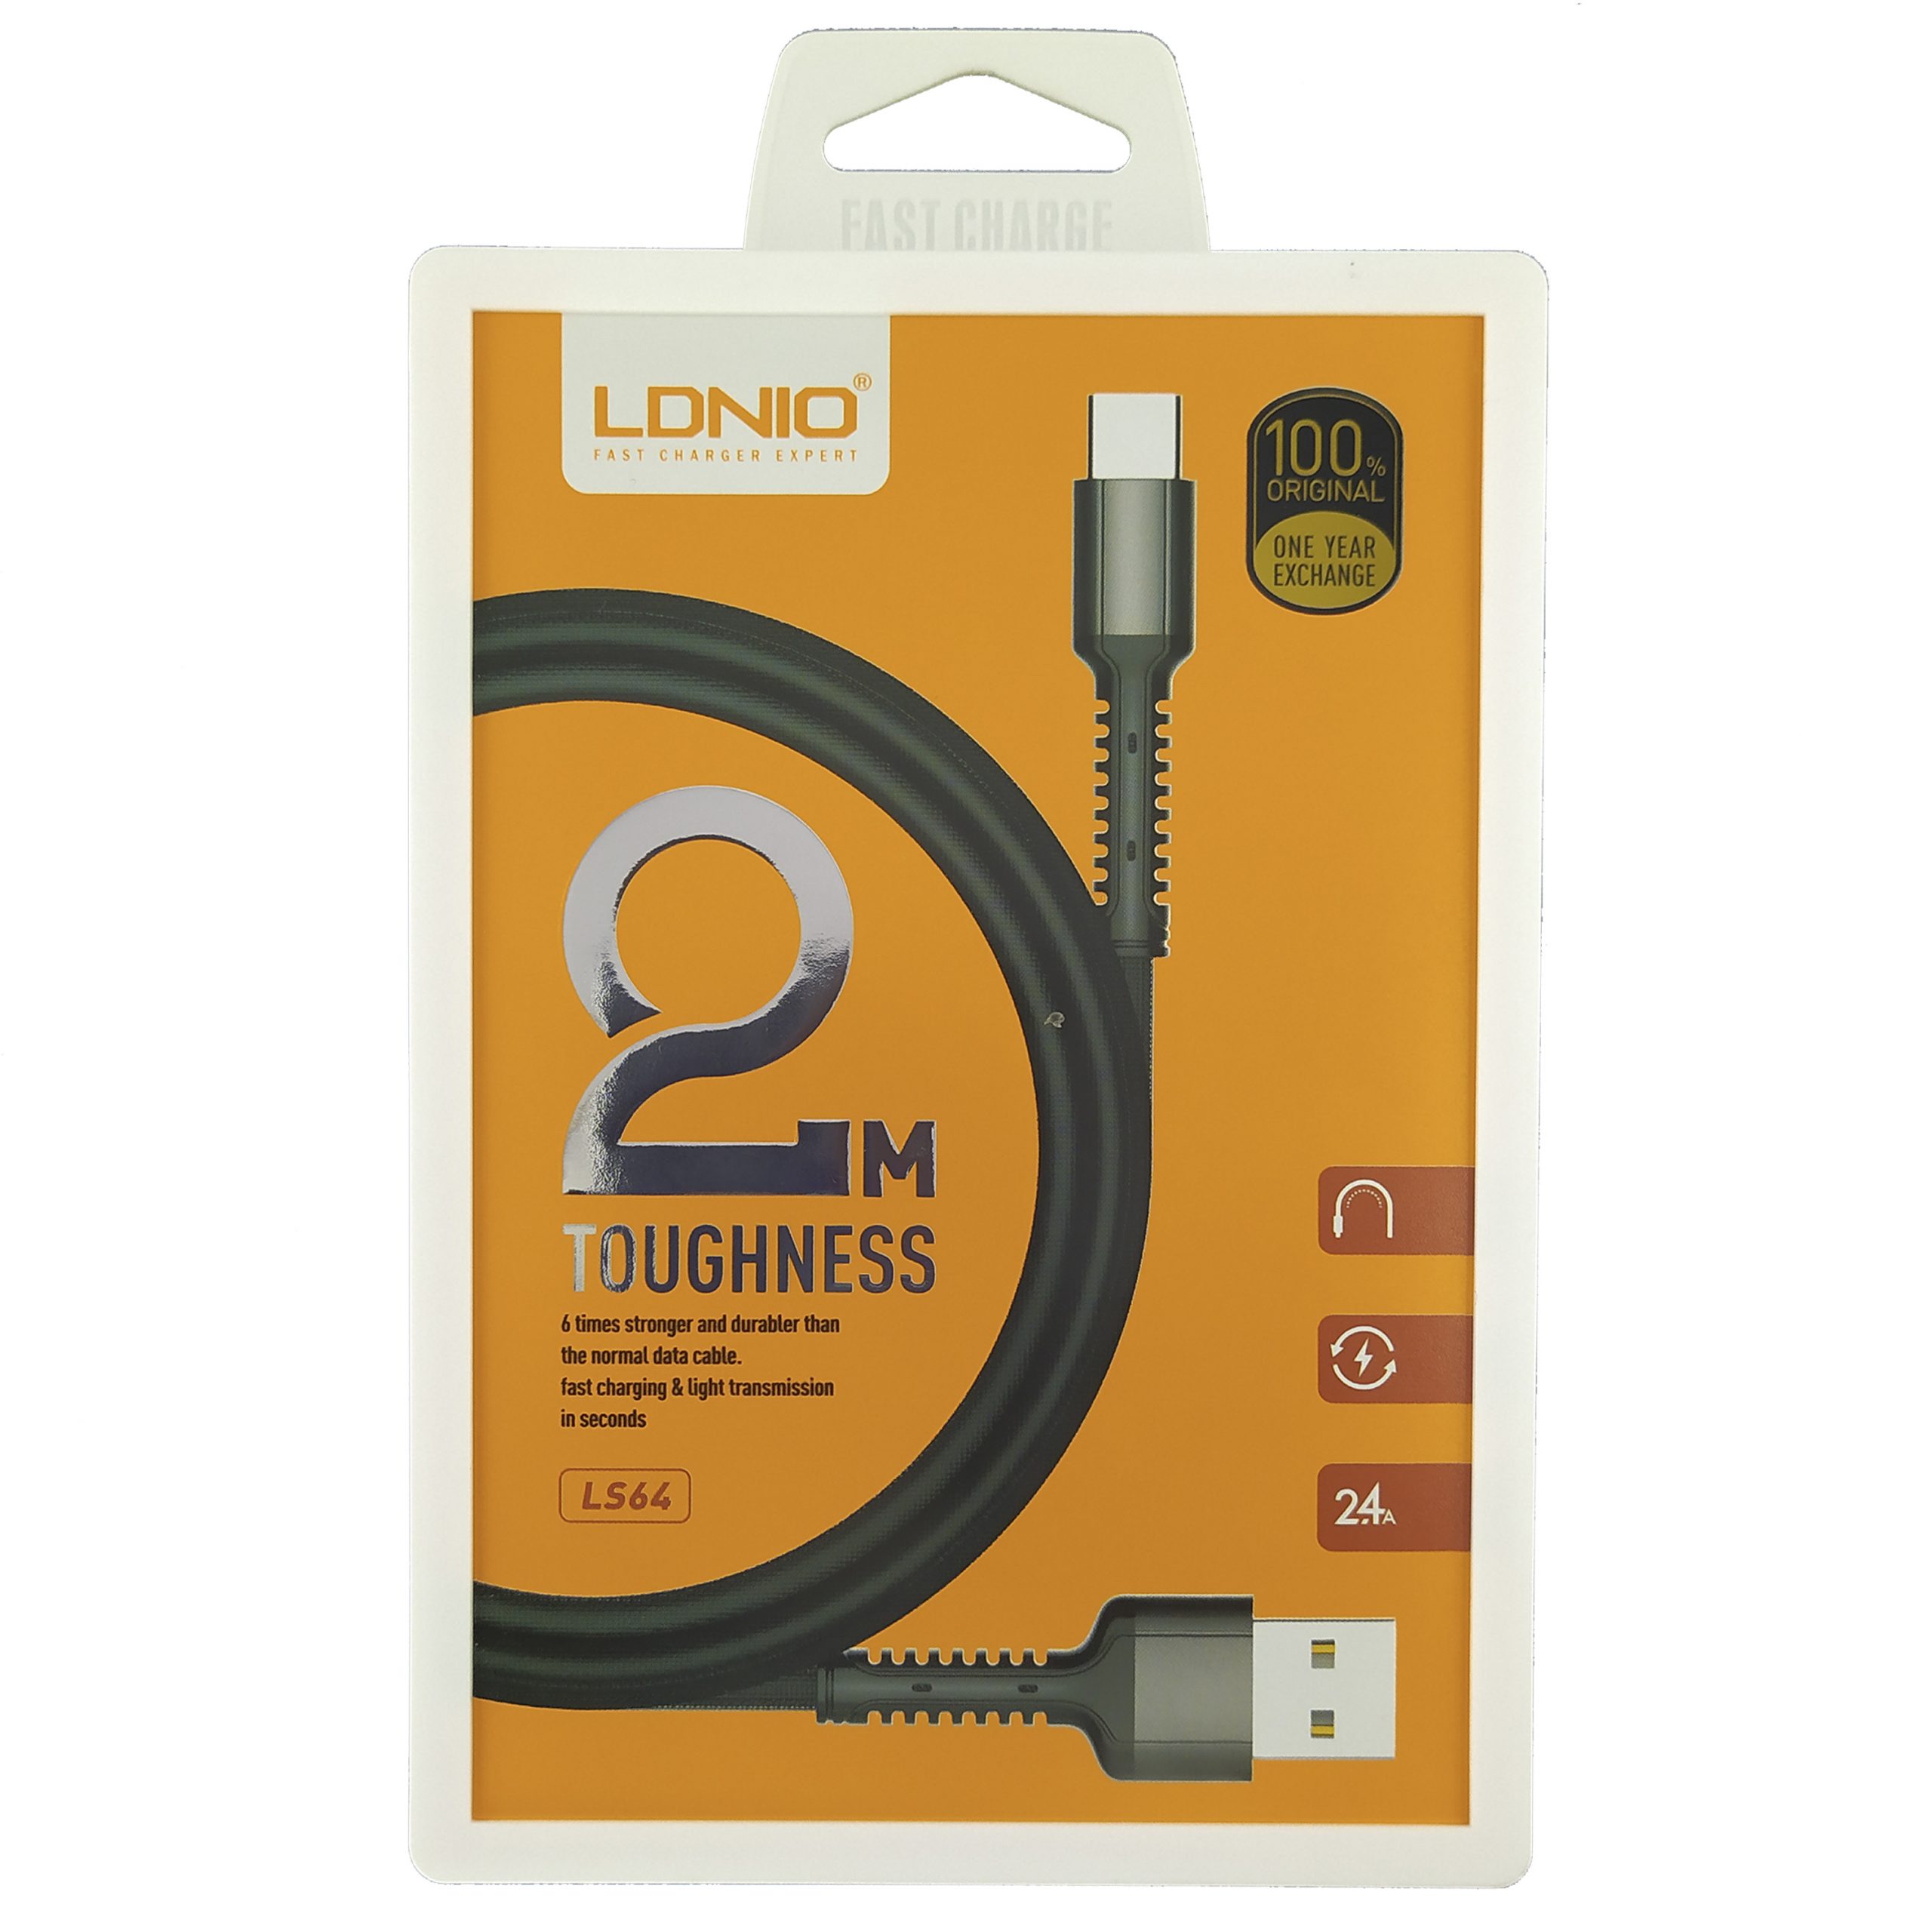 CABLE USB LDNIO LS64 TIPO C 2M – Orange Store